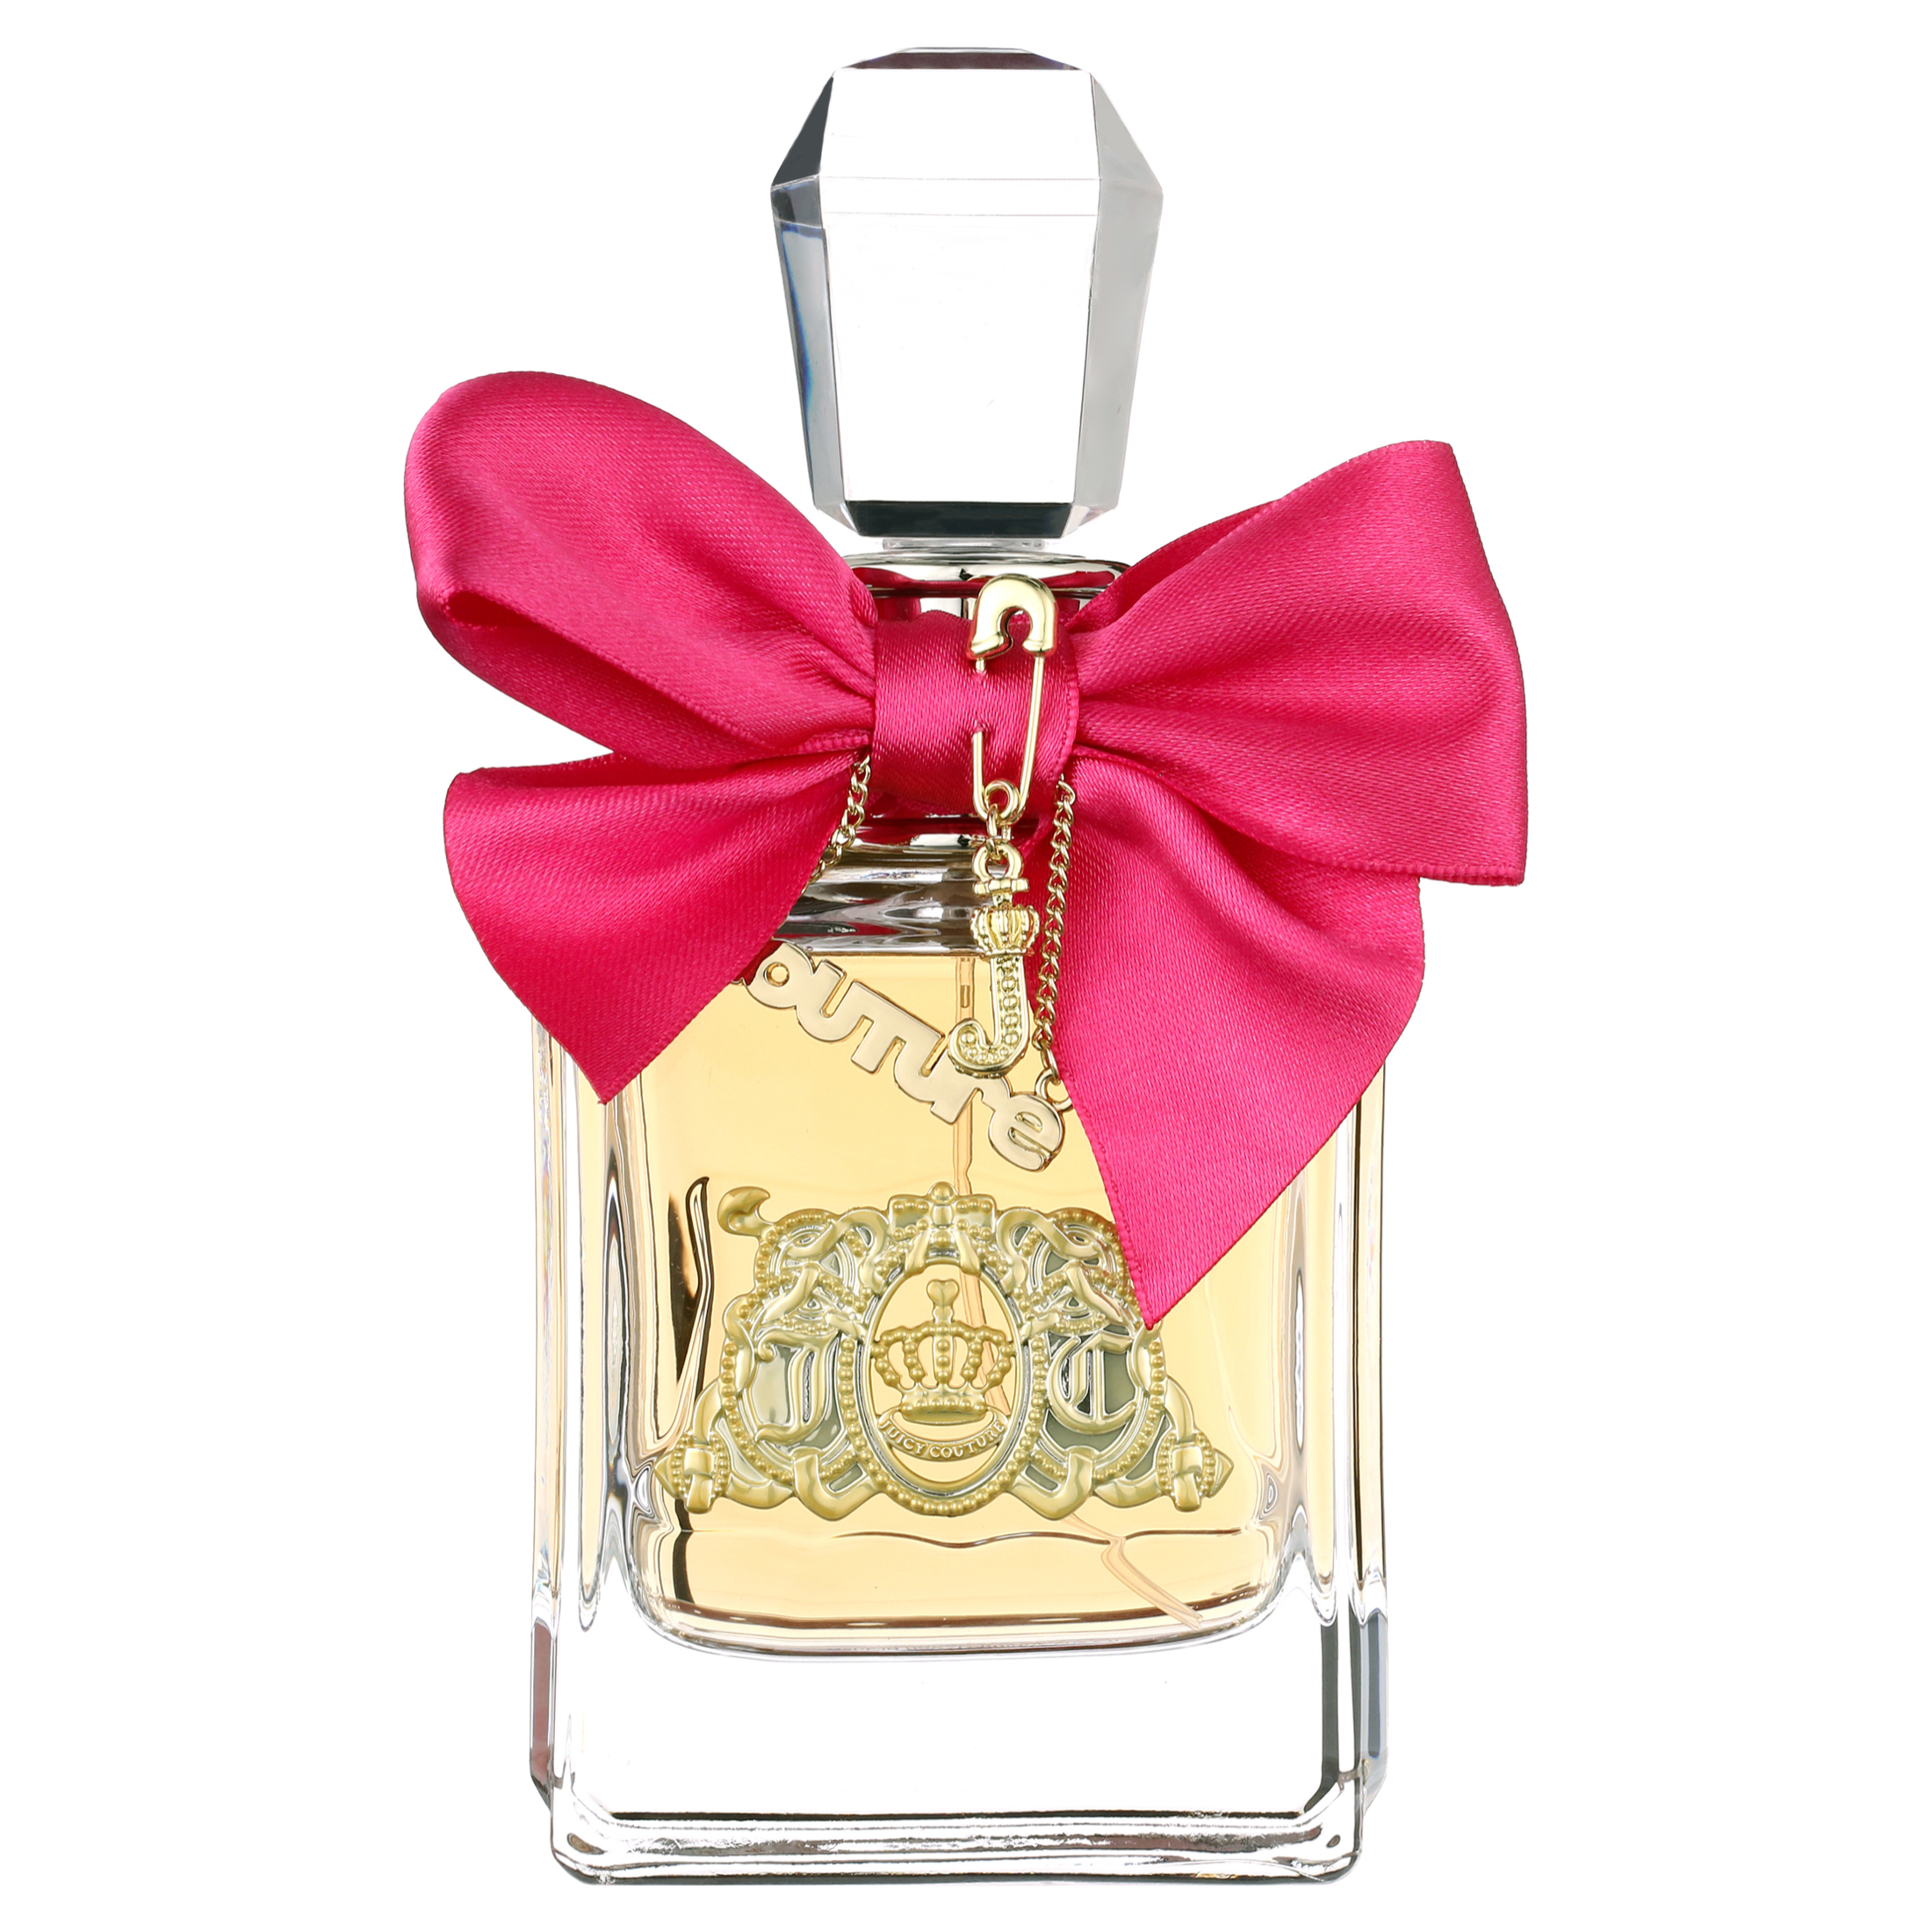 Juicy Couture Viva La Juicy Eau de Parfum, Perfume for Women, 3.4 oz - image 1 of 5